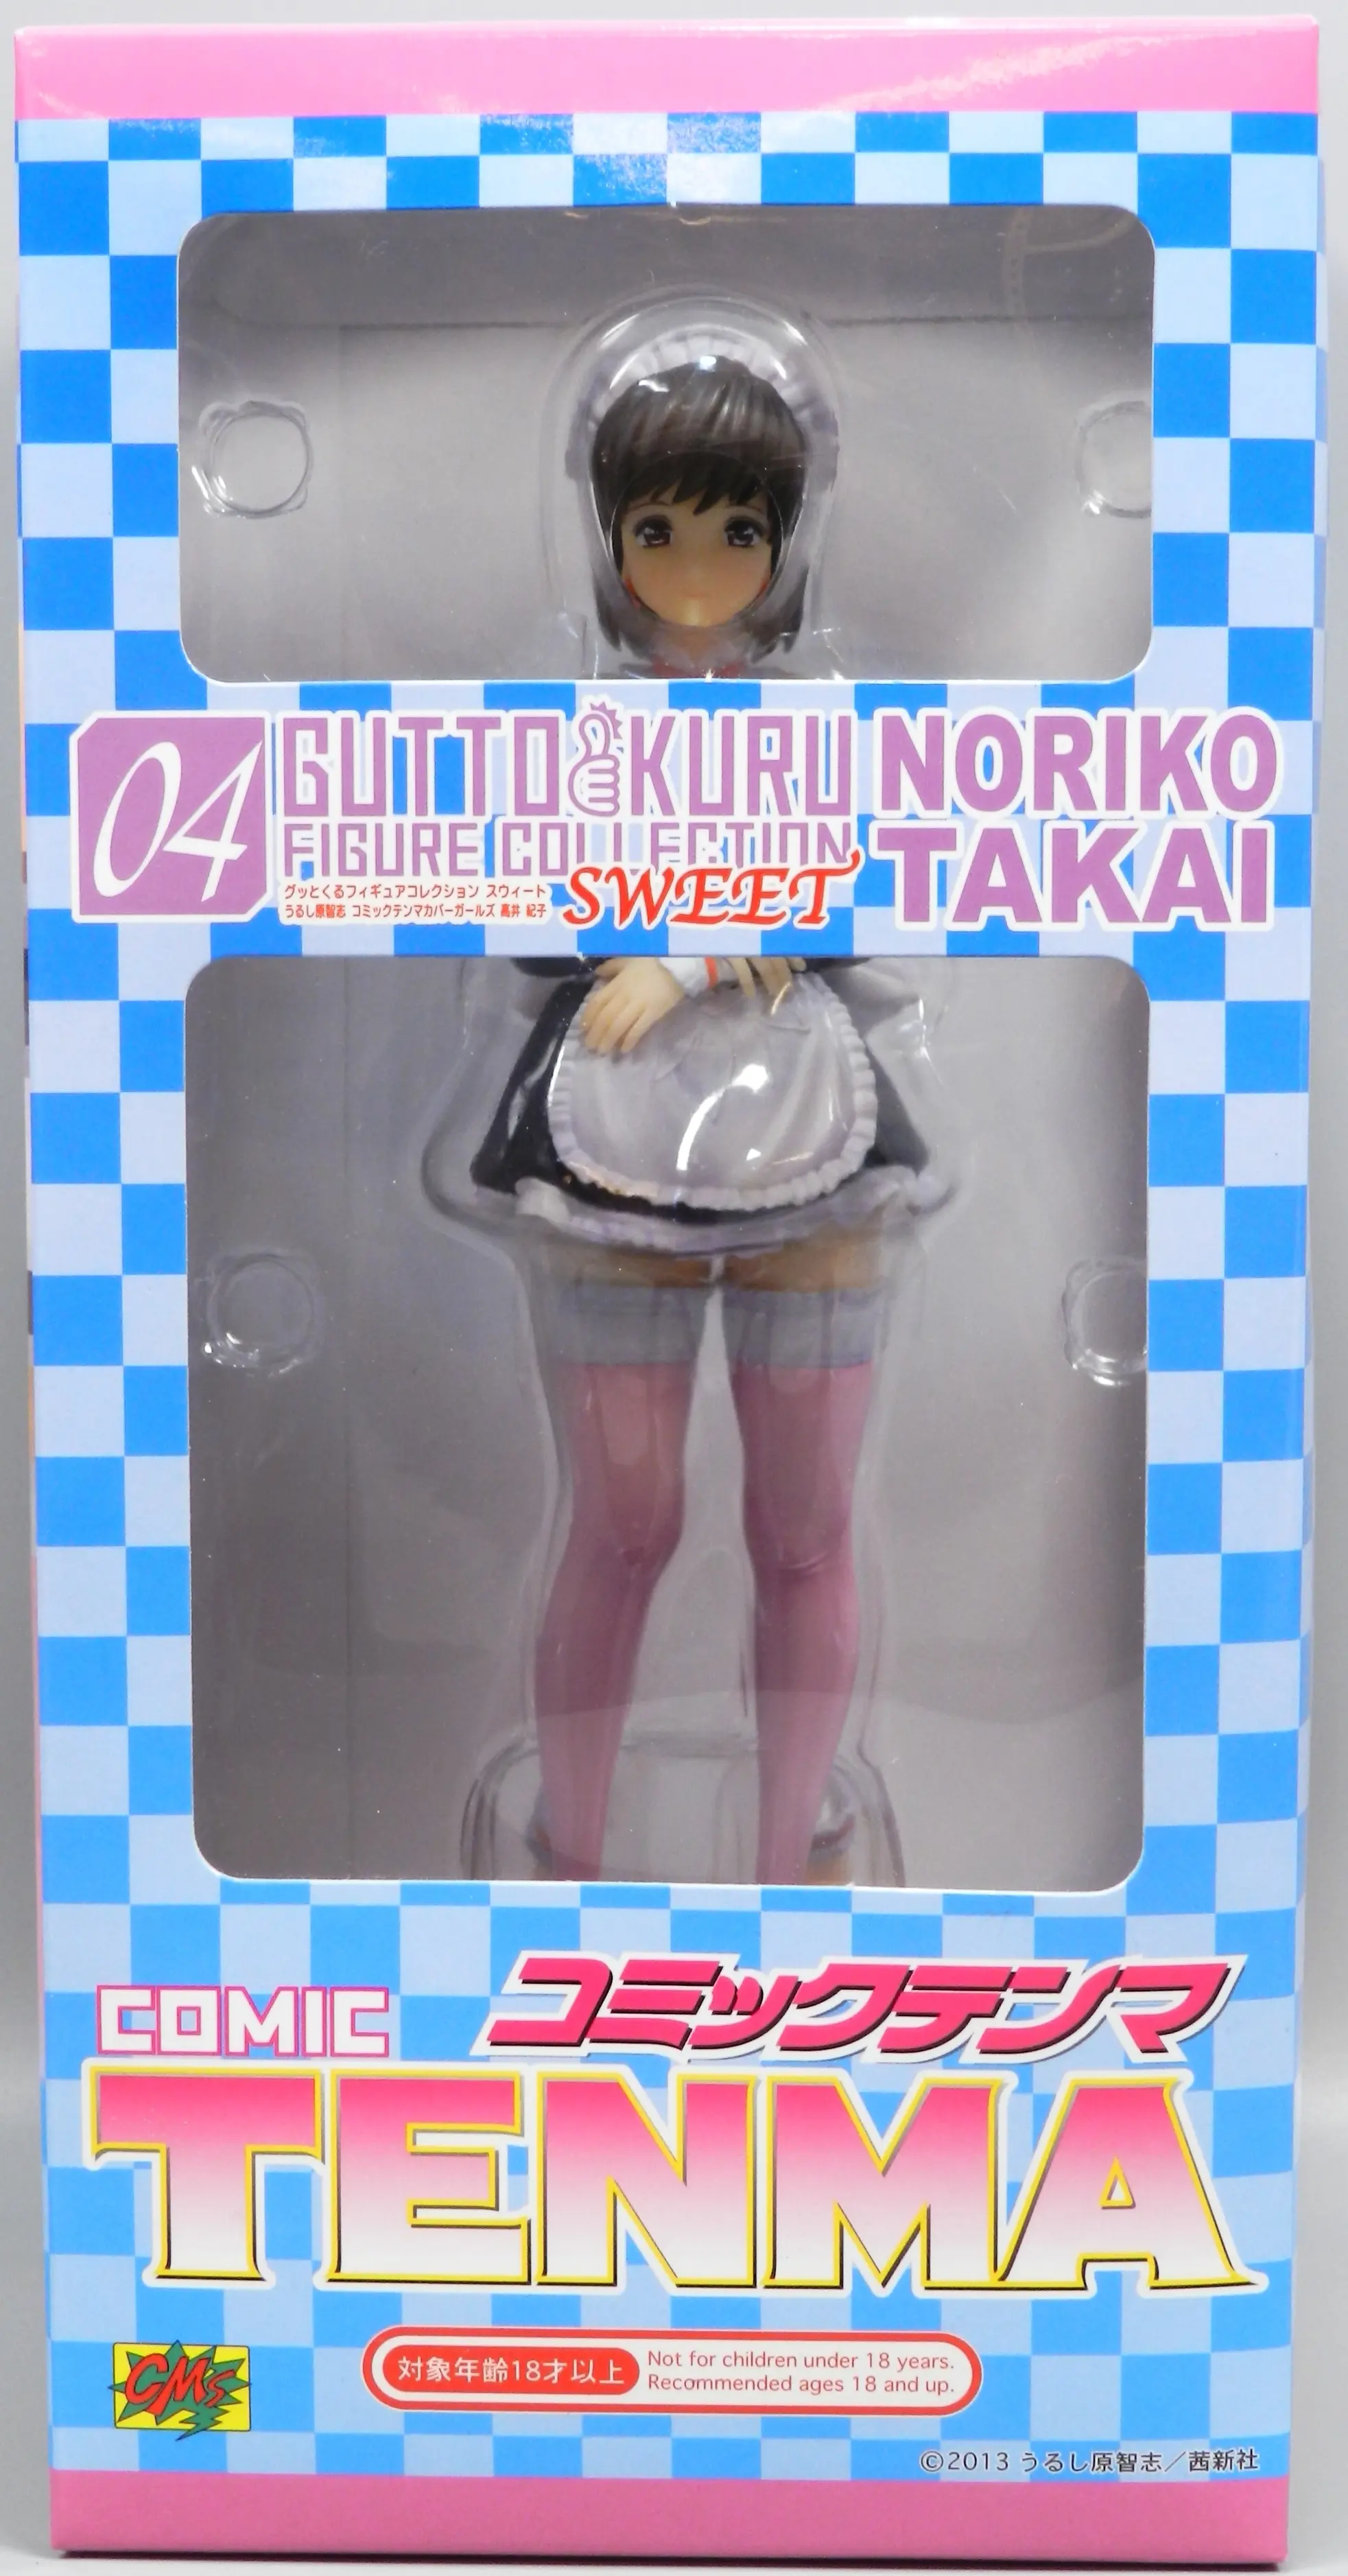 Gutto-Kuru Figure Collection - Takai Noriko - Urushihara Satoshi